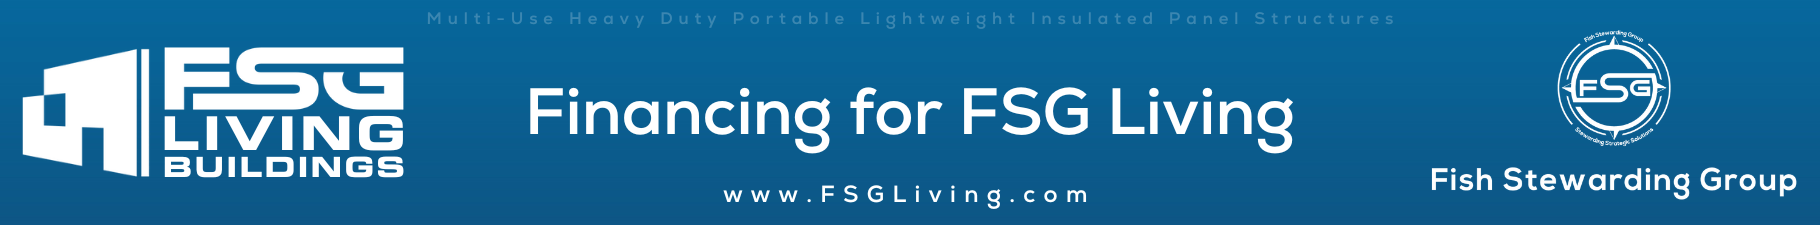 Financing for FSG Living Buildings header